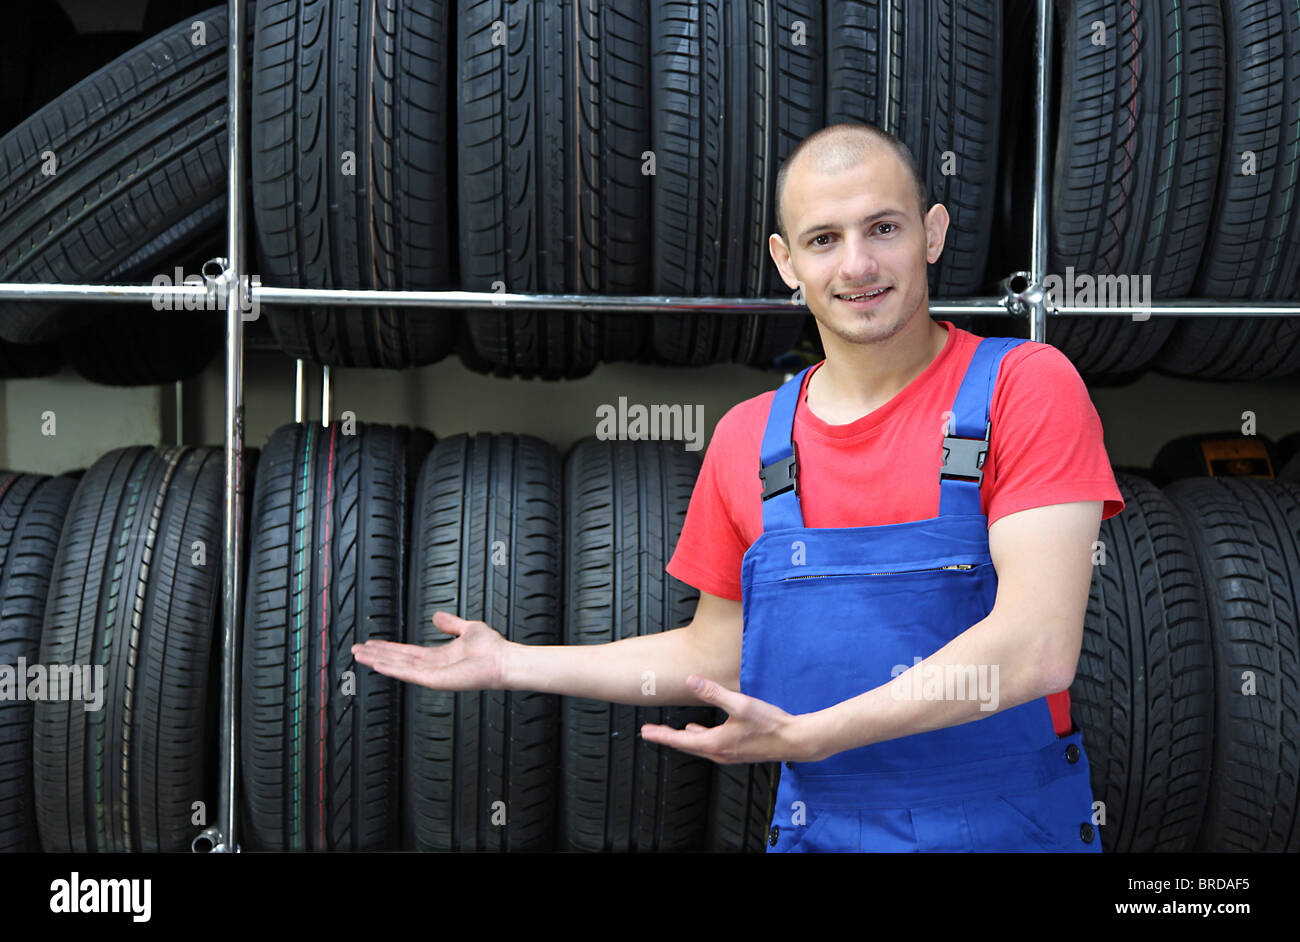 Ein Lächeln auf den Lippen Mechaniker in einer Garage stehen neben einem Rack voller Reifen und eine positive Geste Stockfoto